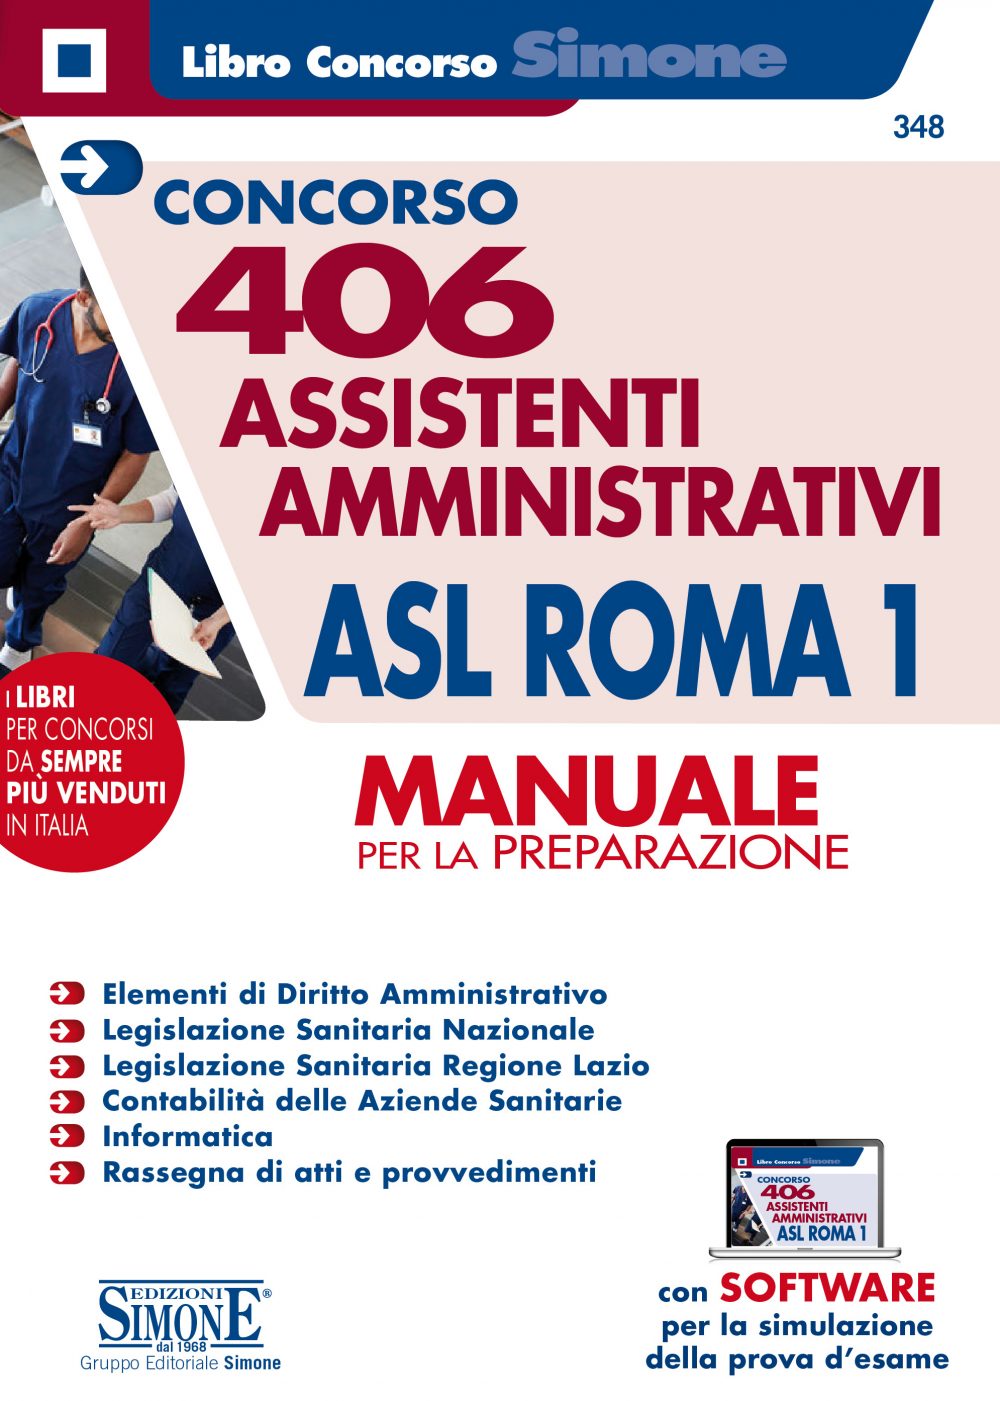 Concorso 406 Assistenti Amministrativi ASL Roma 1 - Manuale per la preparazione